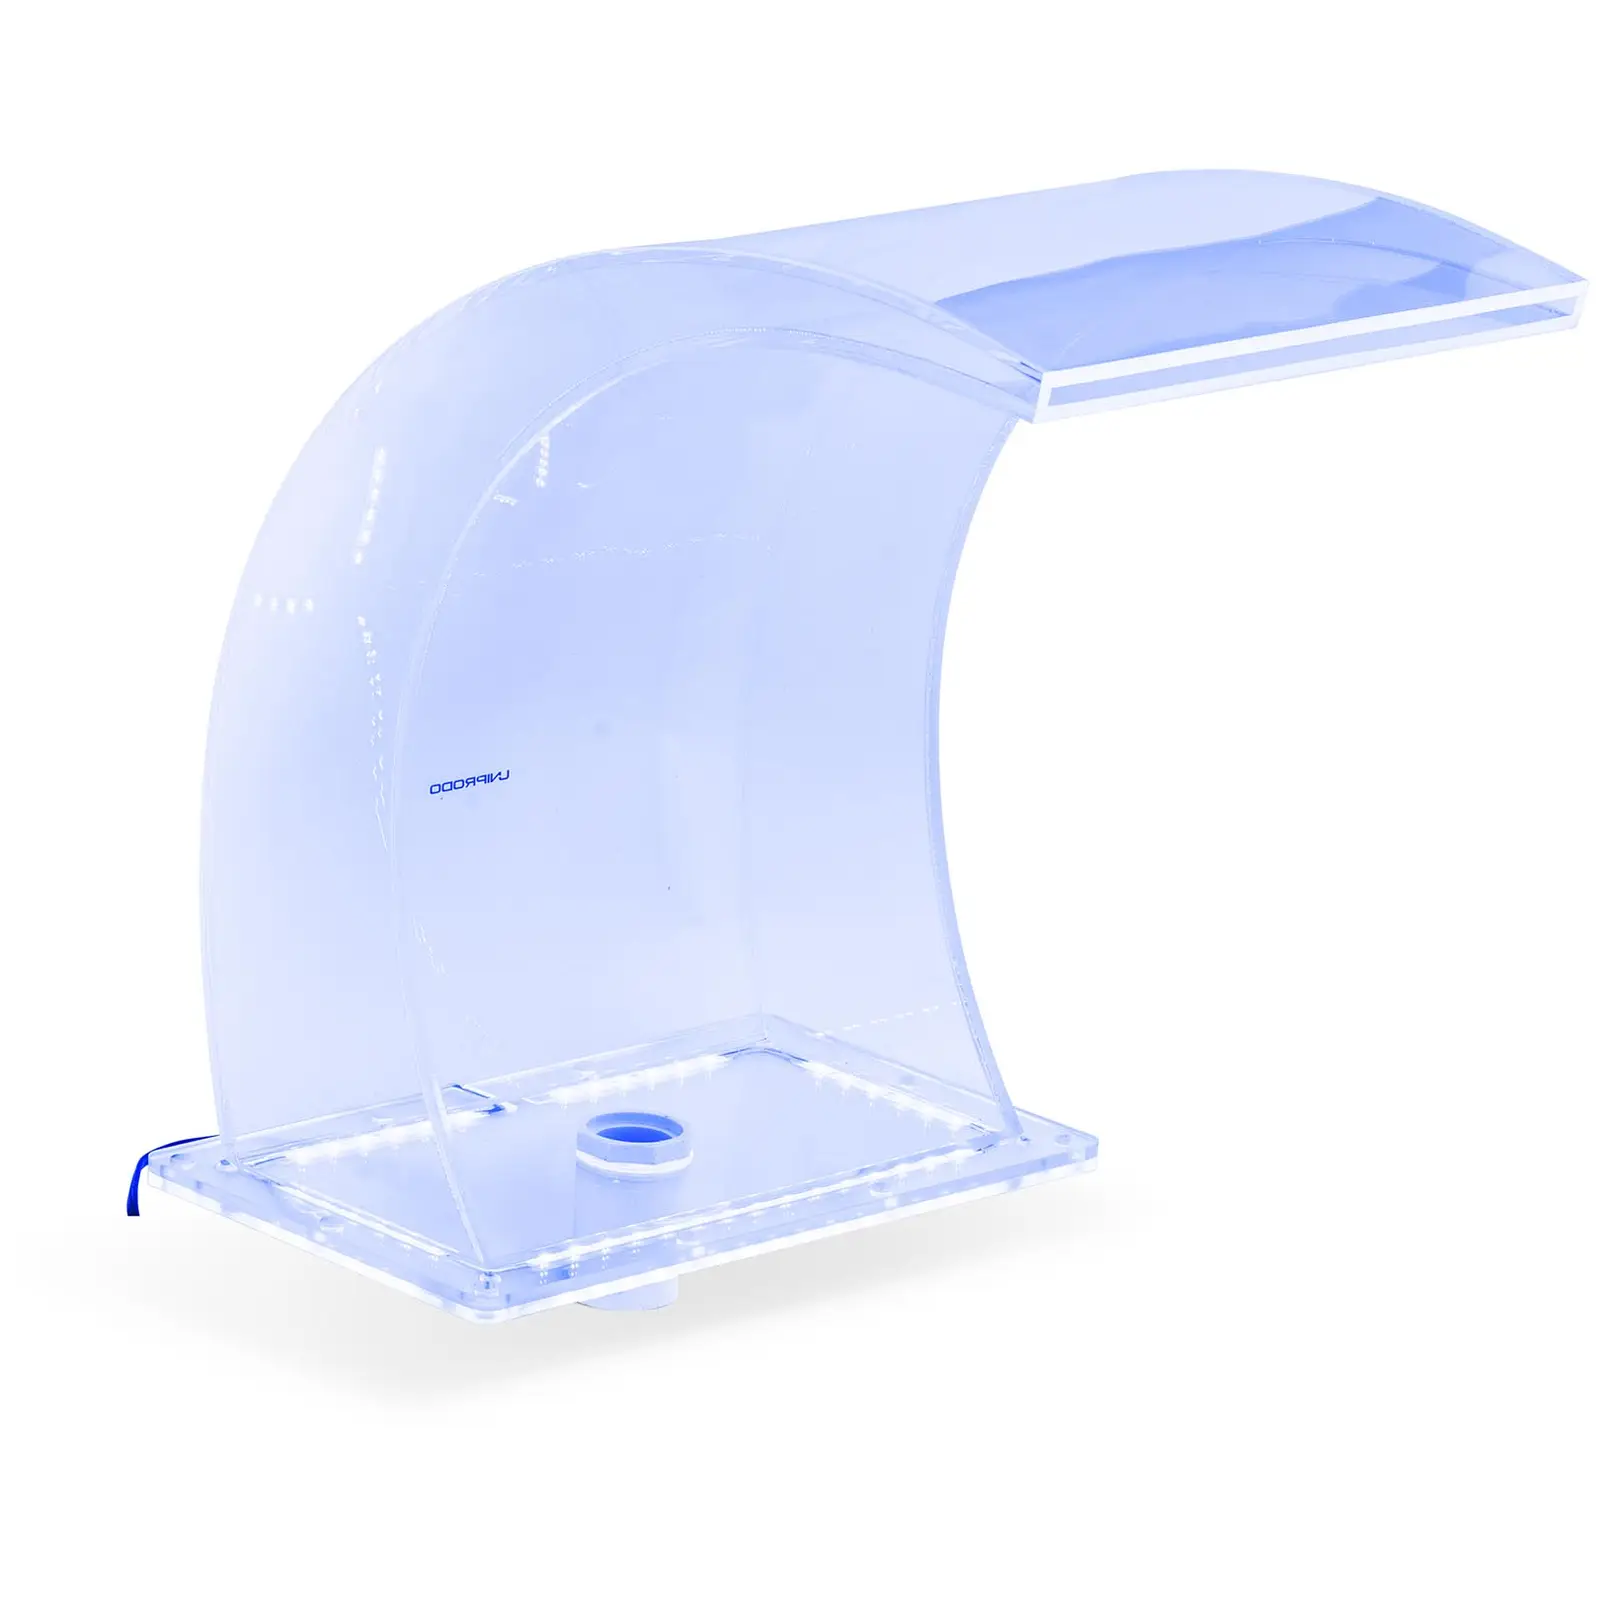 Chrlič vody - 33 cm - LED osvětlení - modrá/bílá barva - výtok 303 mm